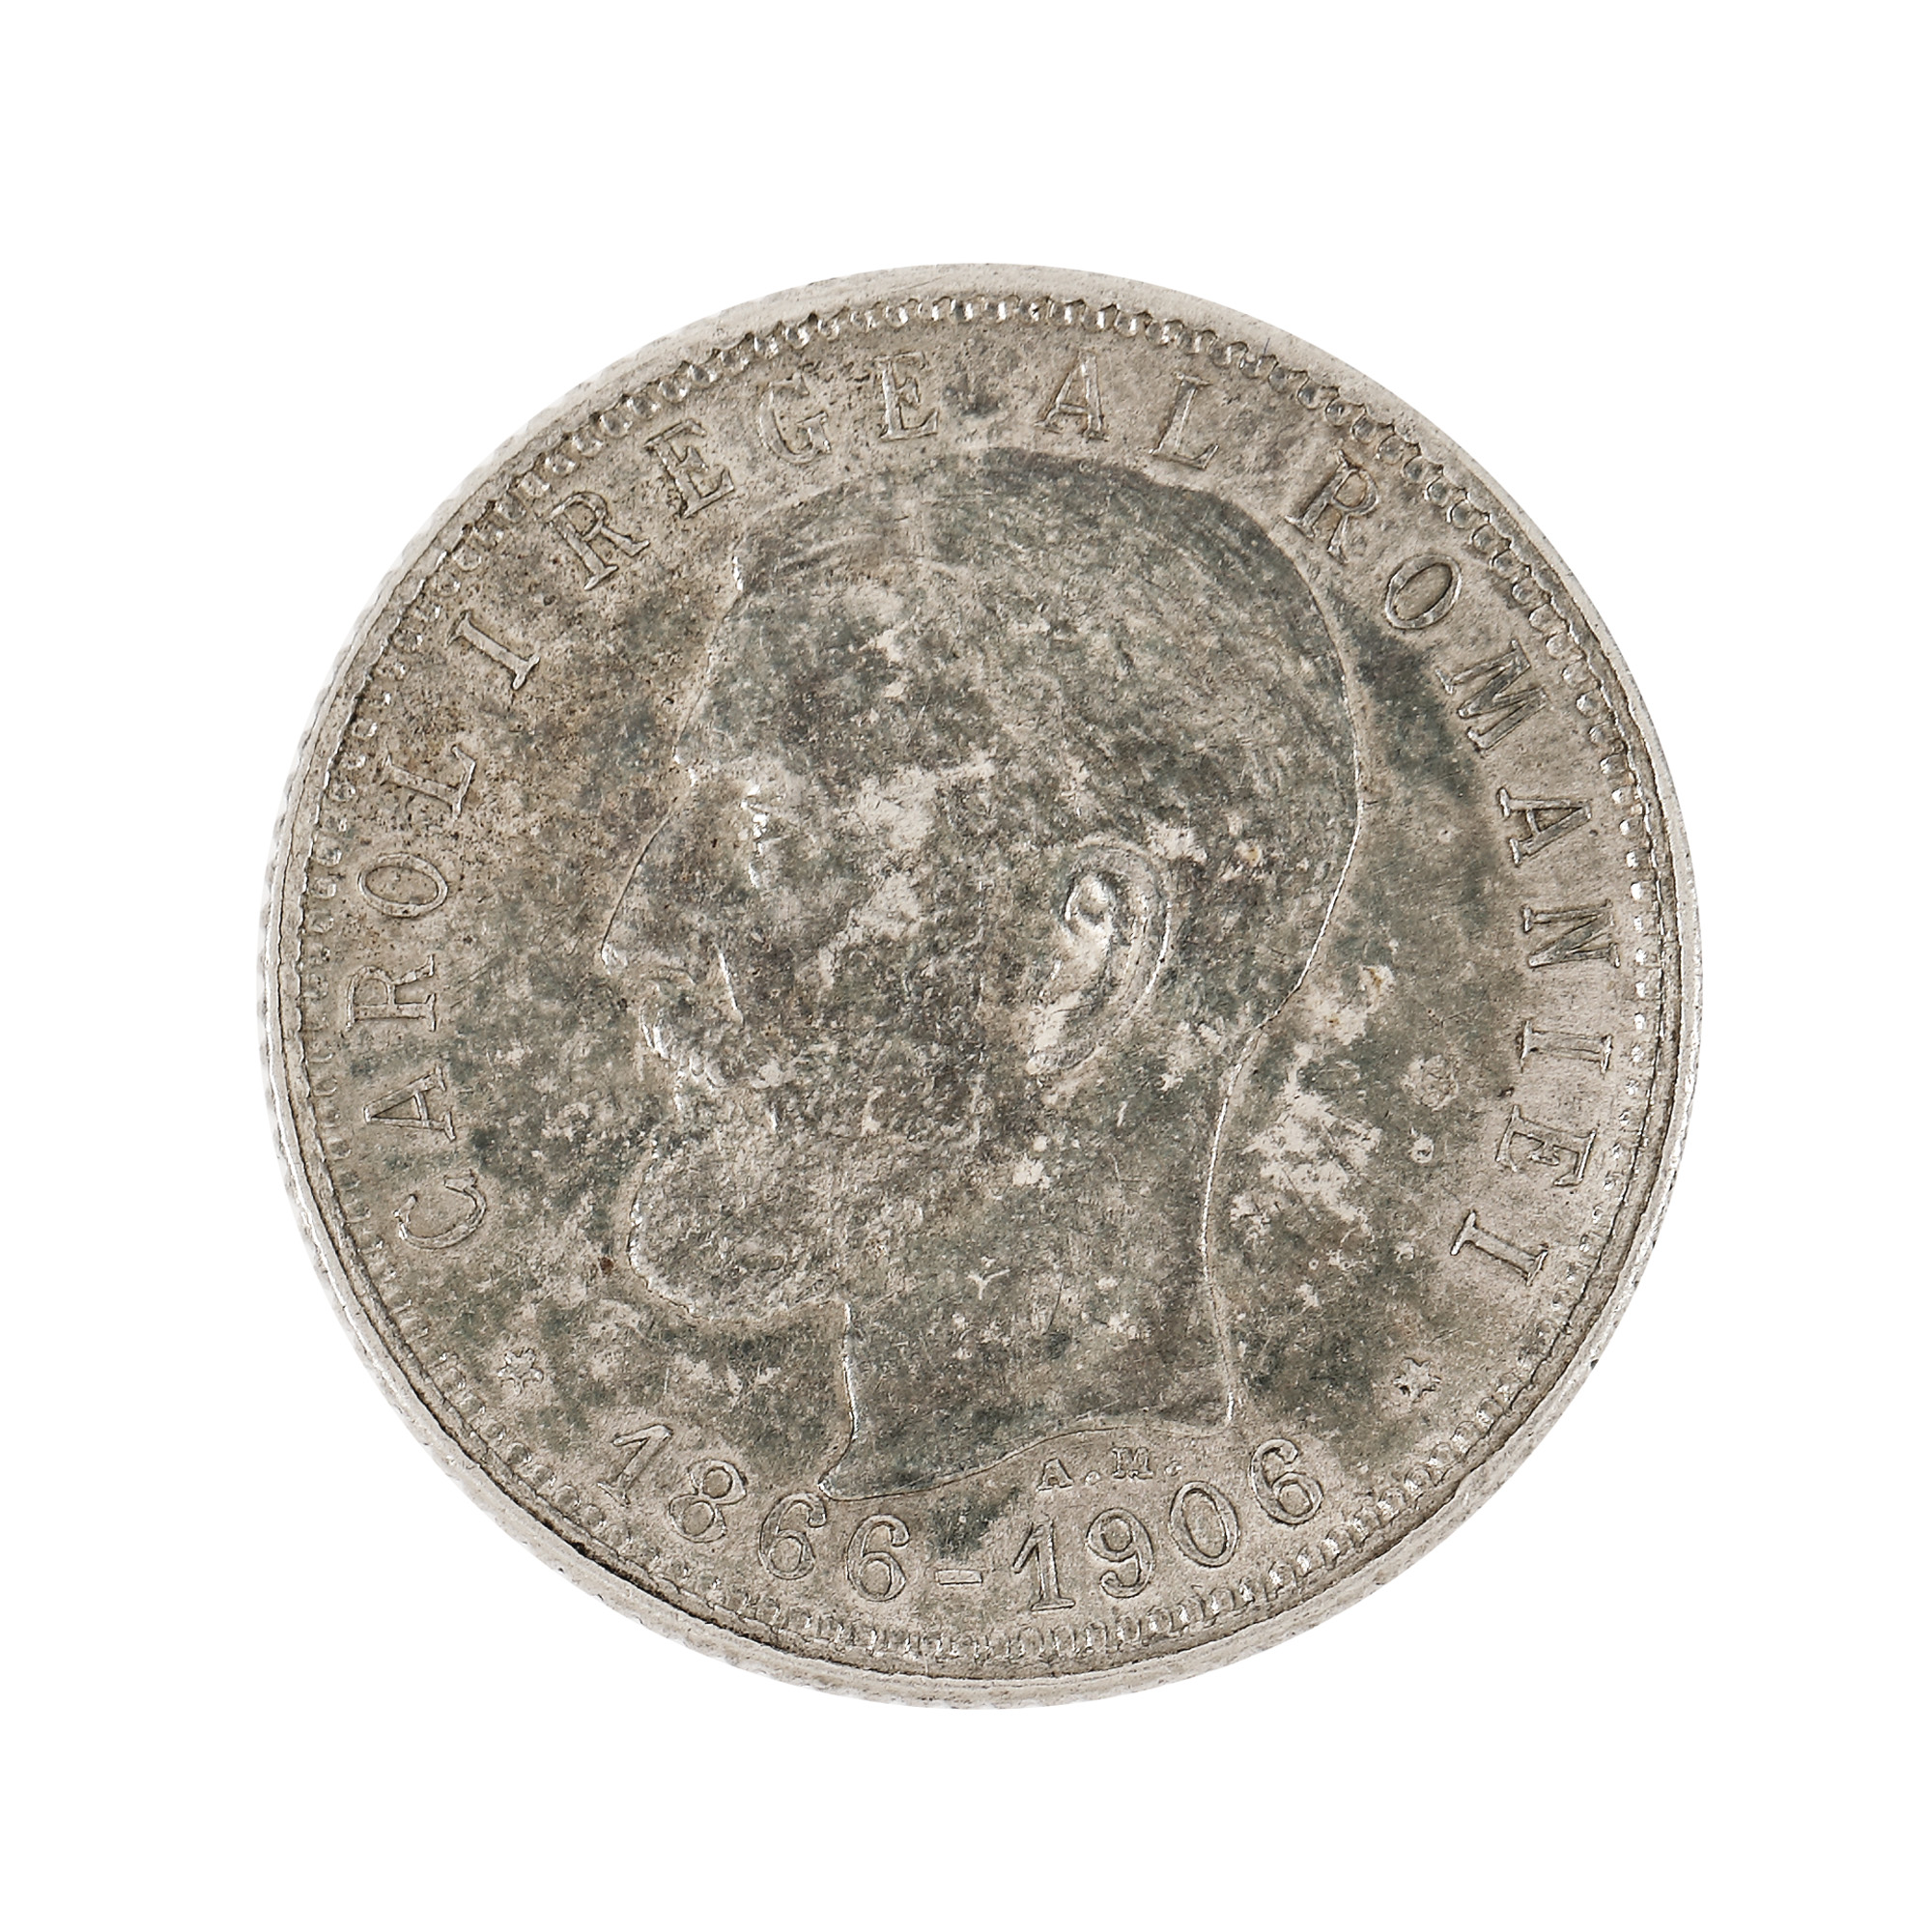 1 Leu 1906 coin, silver - Image 2 of 2